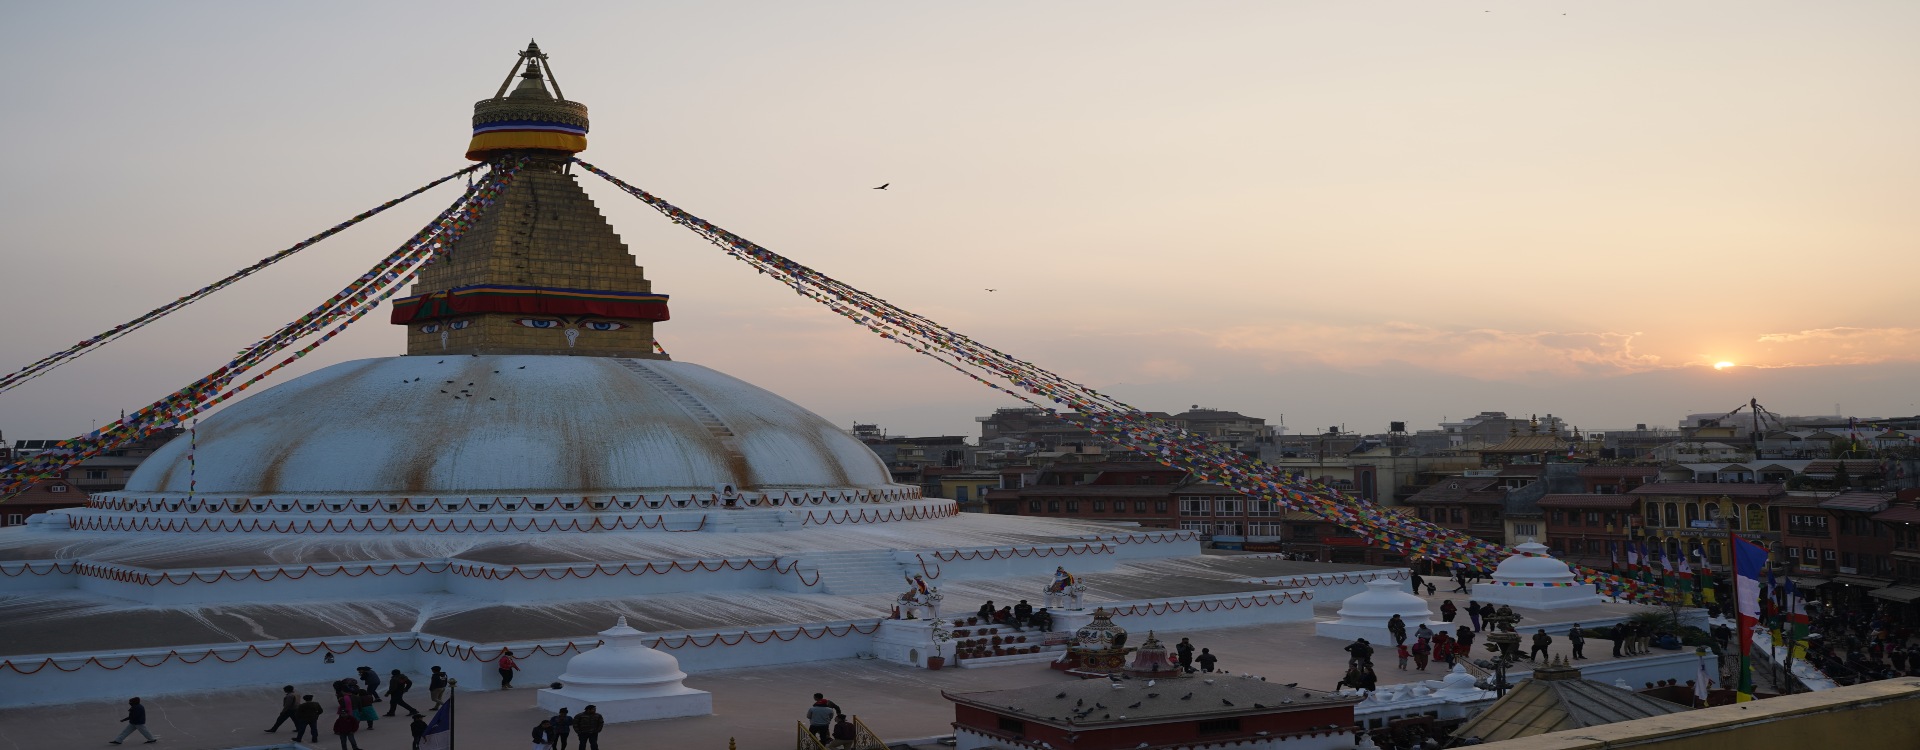 Kathmandu sightseeing tour 